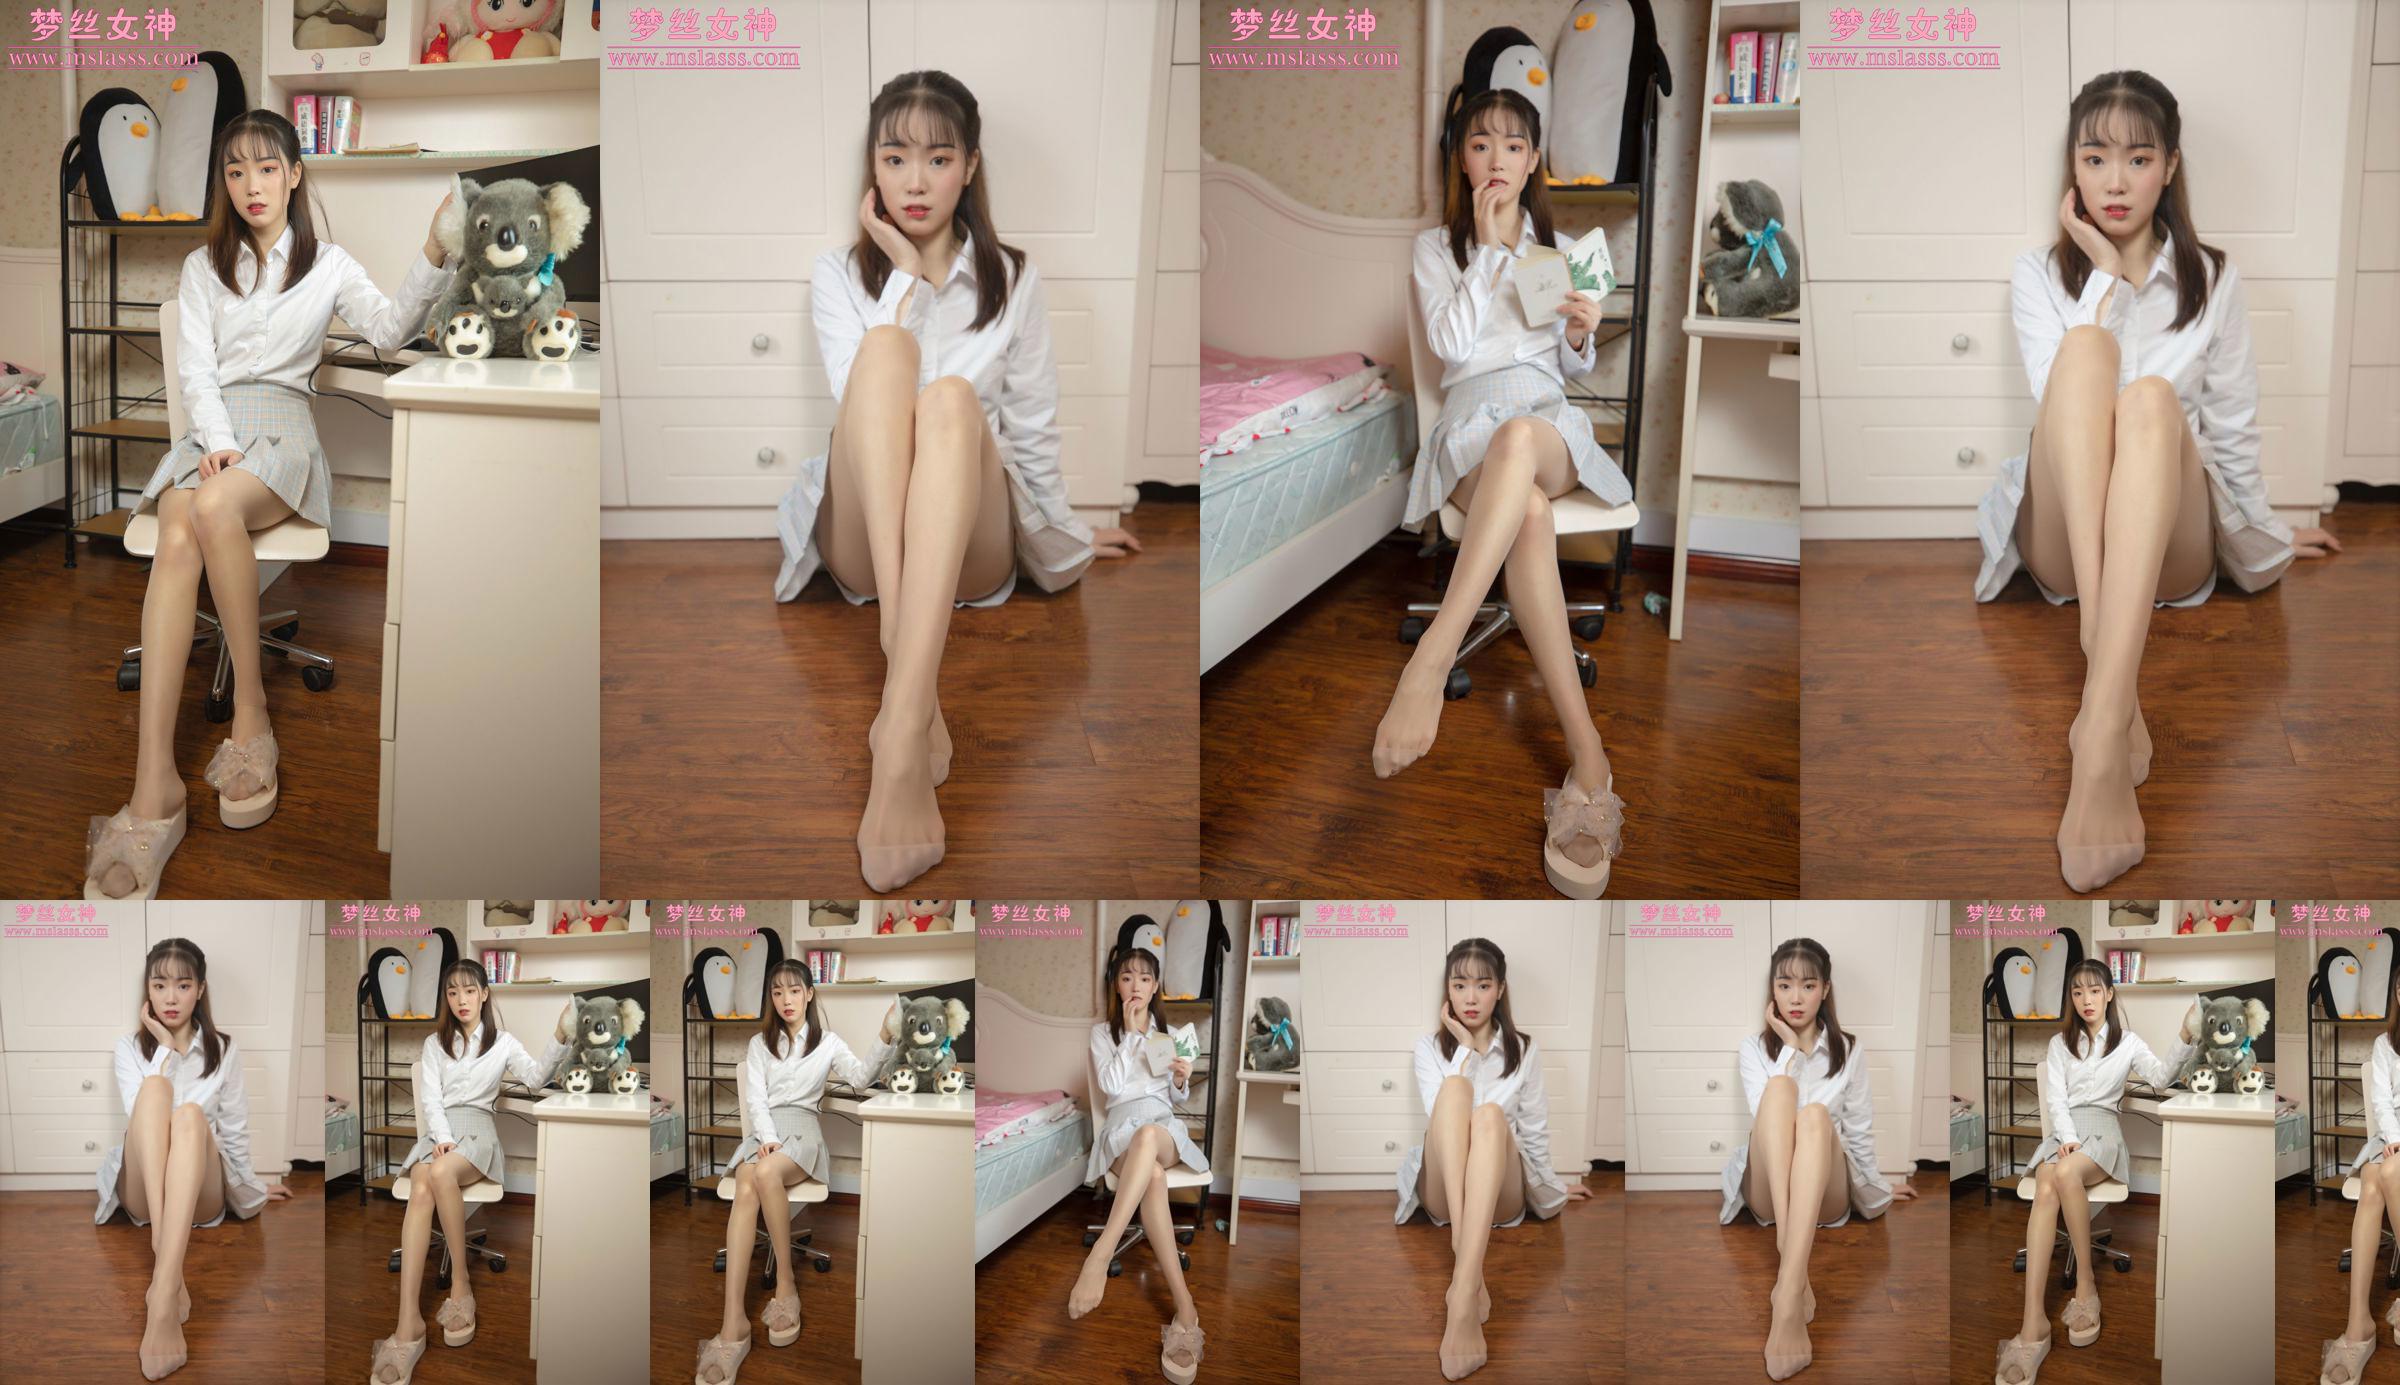 [MSLASS] Zhang Qiying dewi model baru No.d02ece Halaman 1